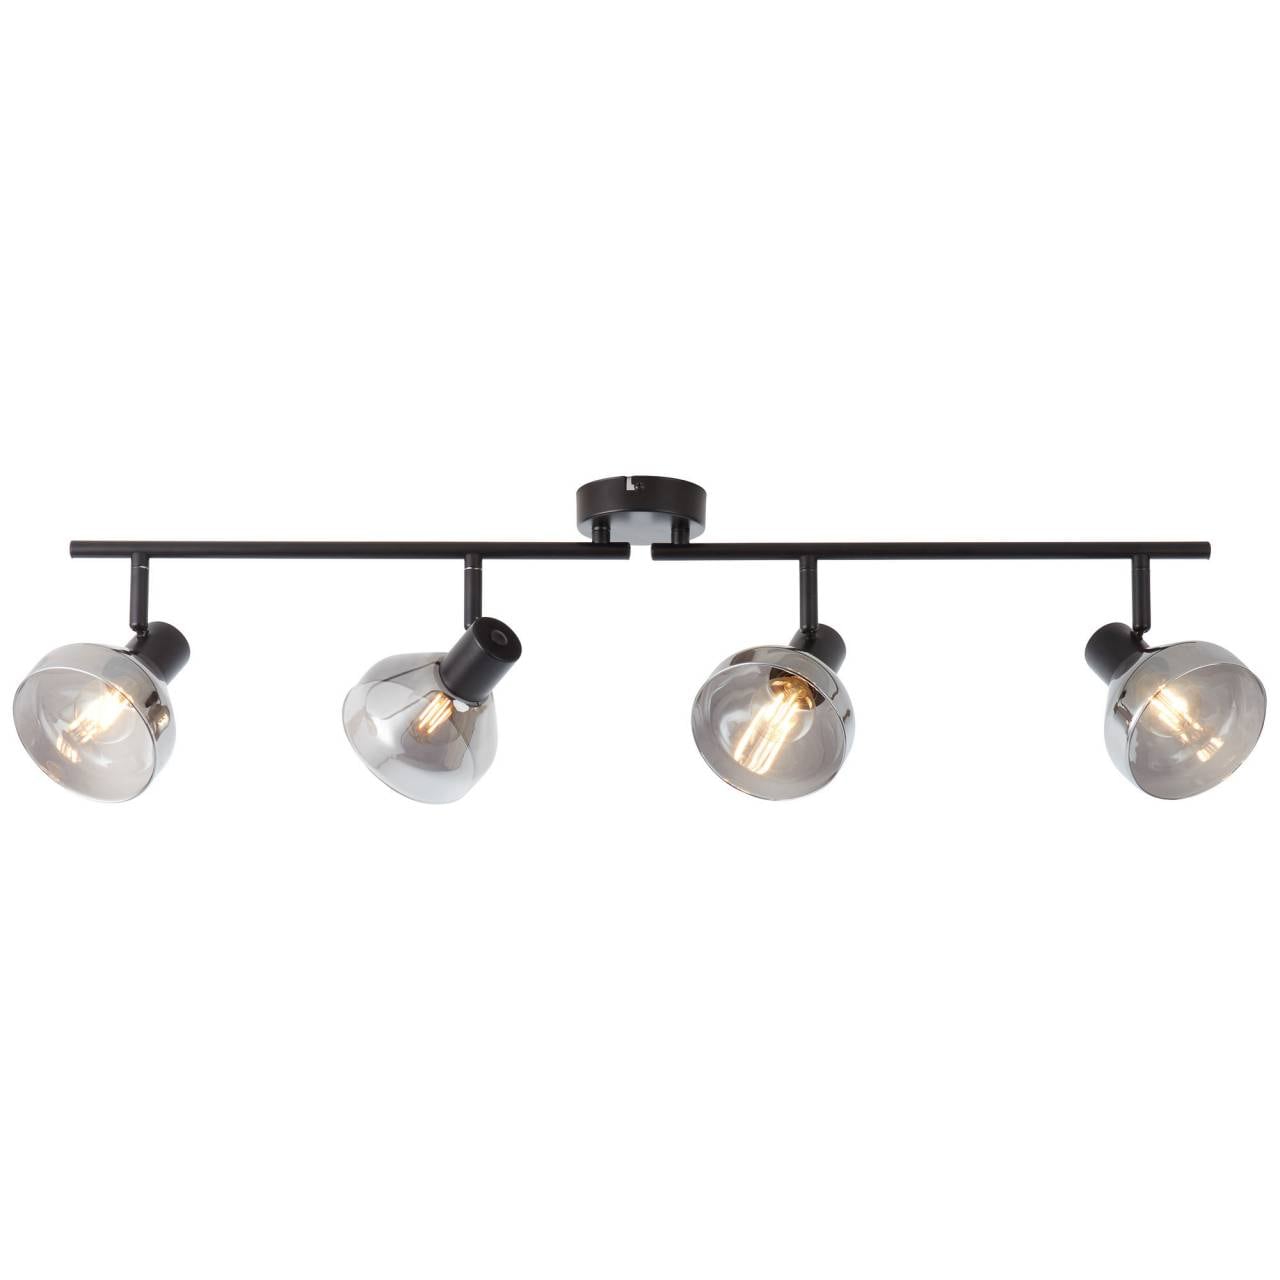 BRILLIANT Lampe Reflekt Spotrohr 4flg schwarzmatt/rauchglas   4x D45, E14, 18W, geeignet für Tropfenlampen (nicht enthal